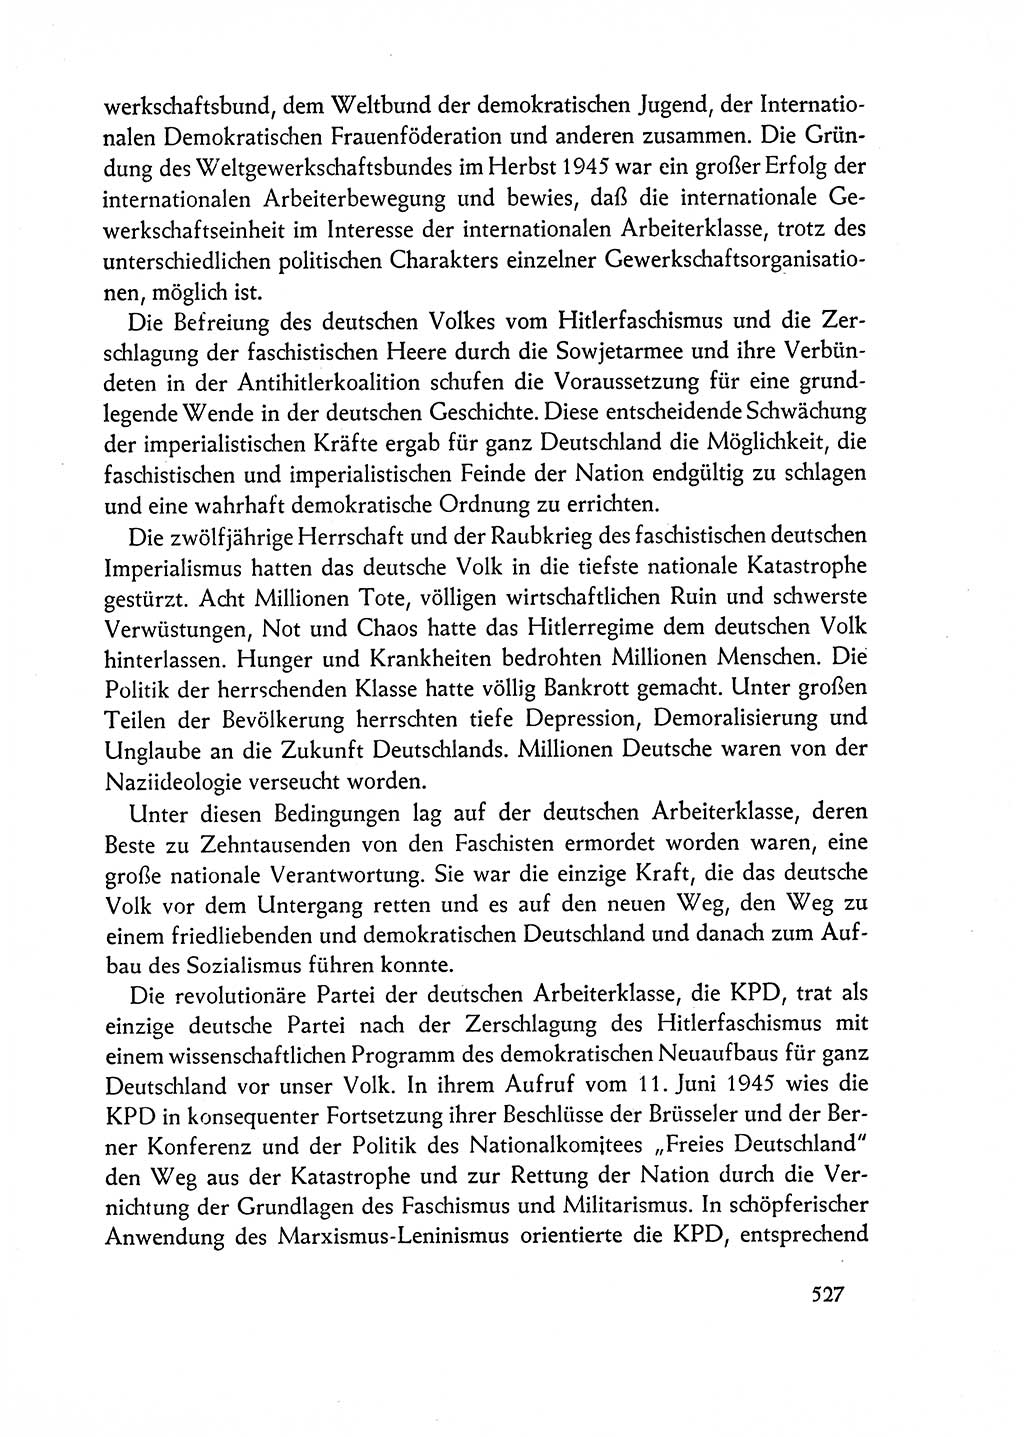 Dokumente der Sozialistischen Einheitspartei Deutschlands (SED) [Deutsche Demokratische Republik (DDR)] 1962-1963, Seite 527 (Dok. SED DDR 1962-1963, S. 527)